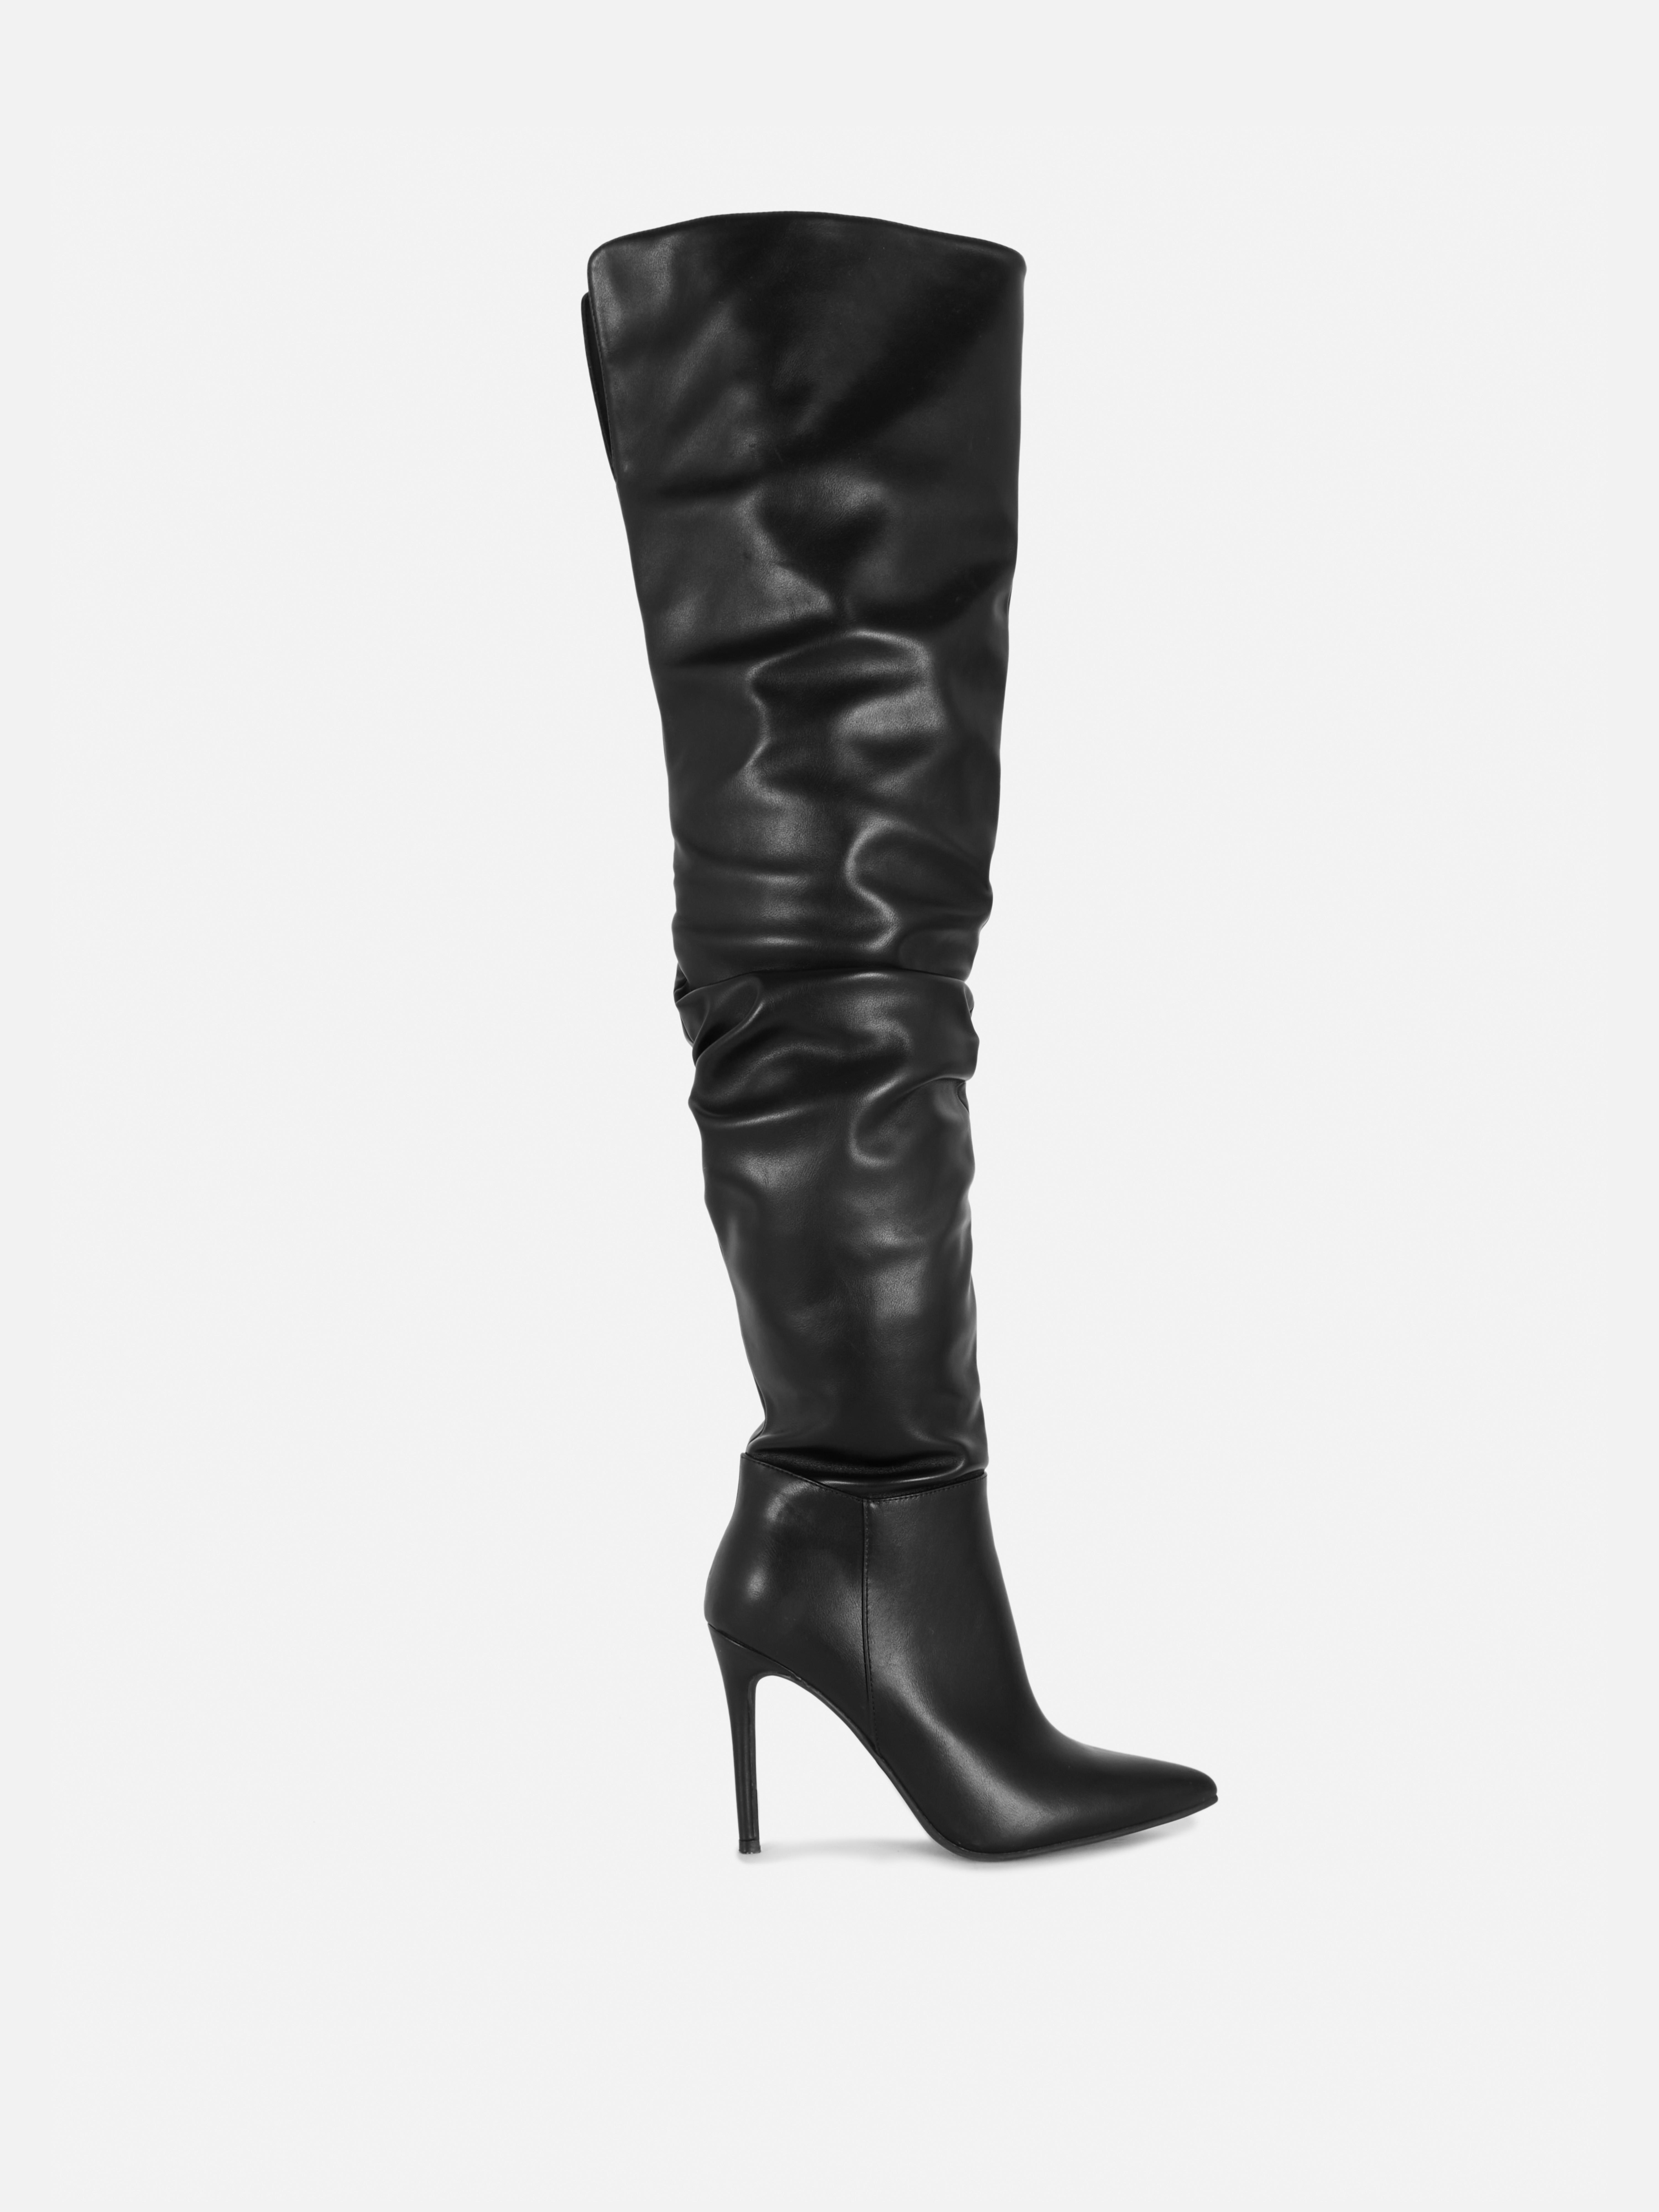 „Rita Ora“ Overknee-Stiletto-Stiefel mit Raffung